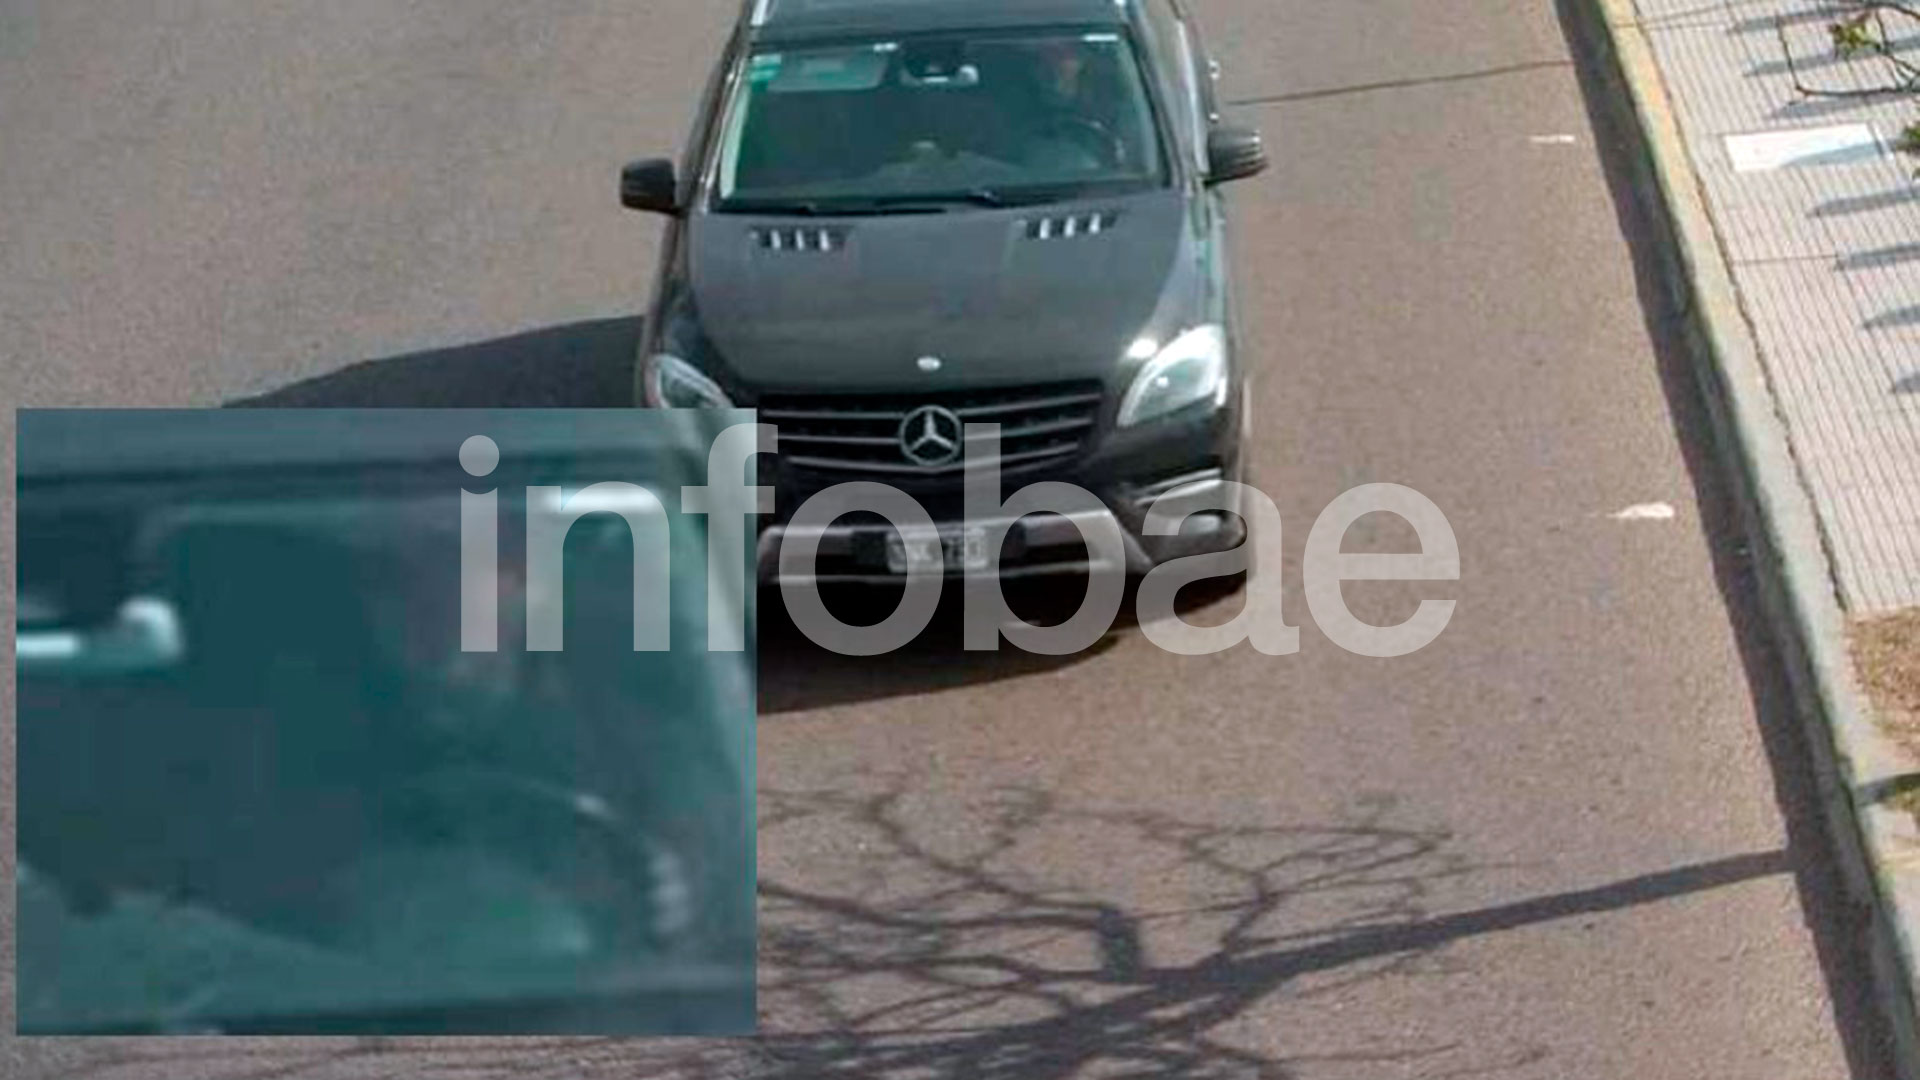 Martin Del Rio aboard his Mercedes Benz van